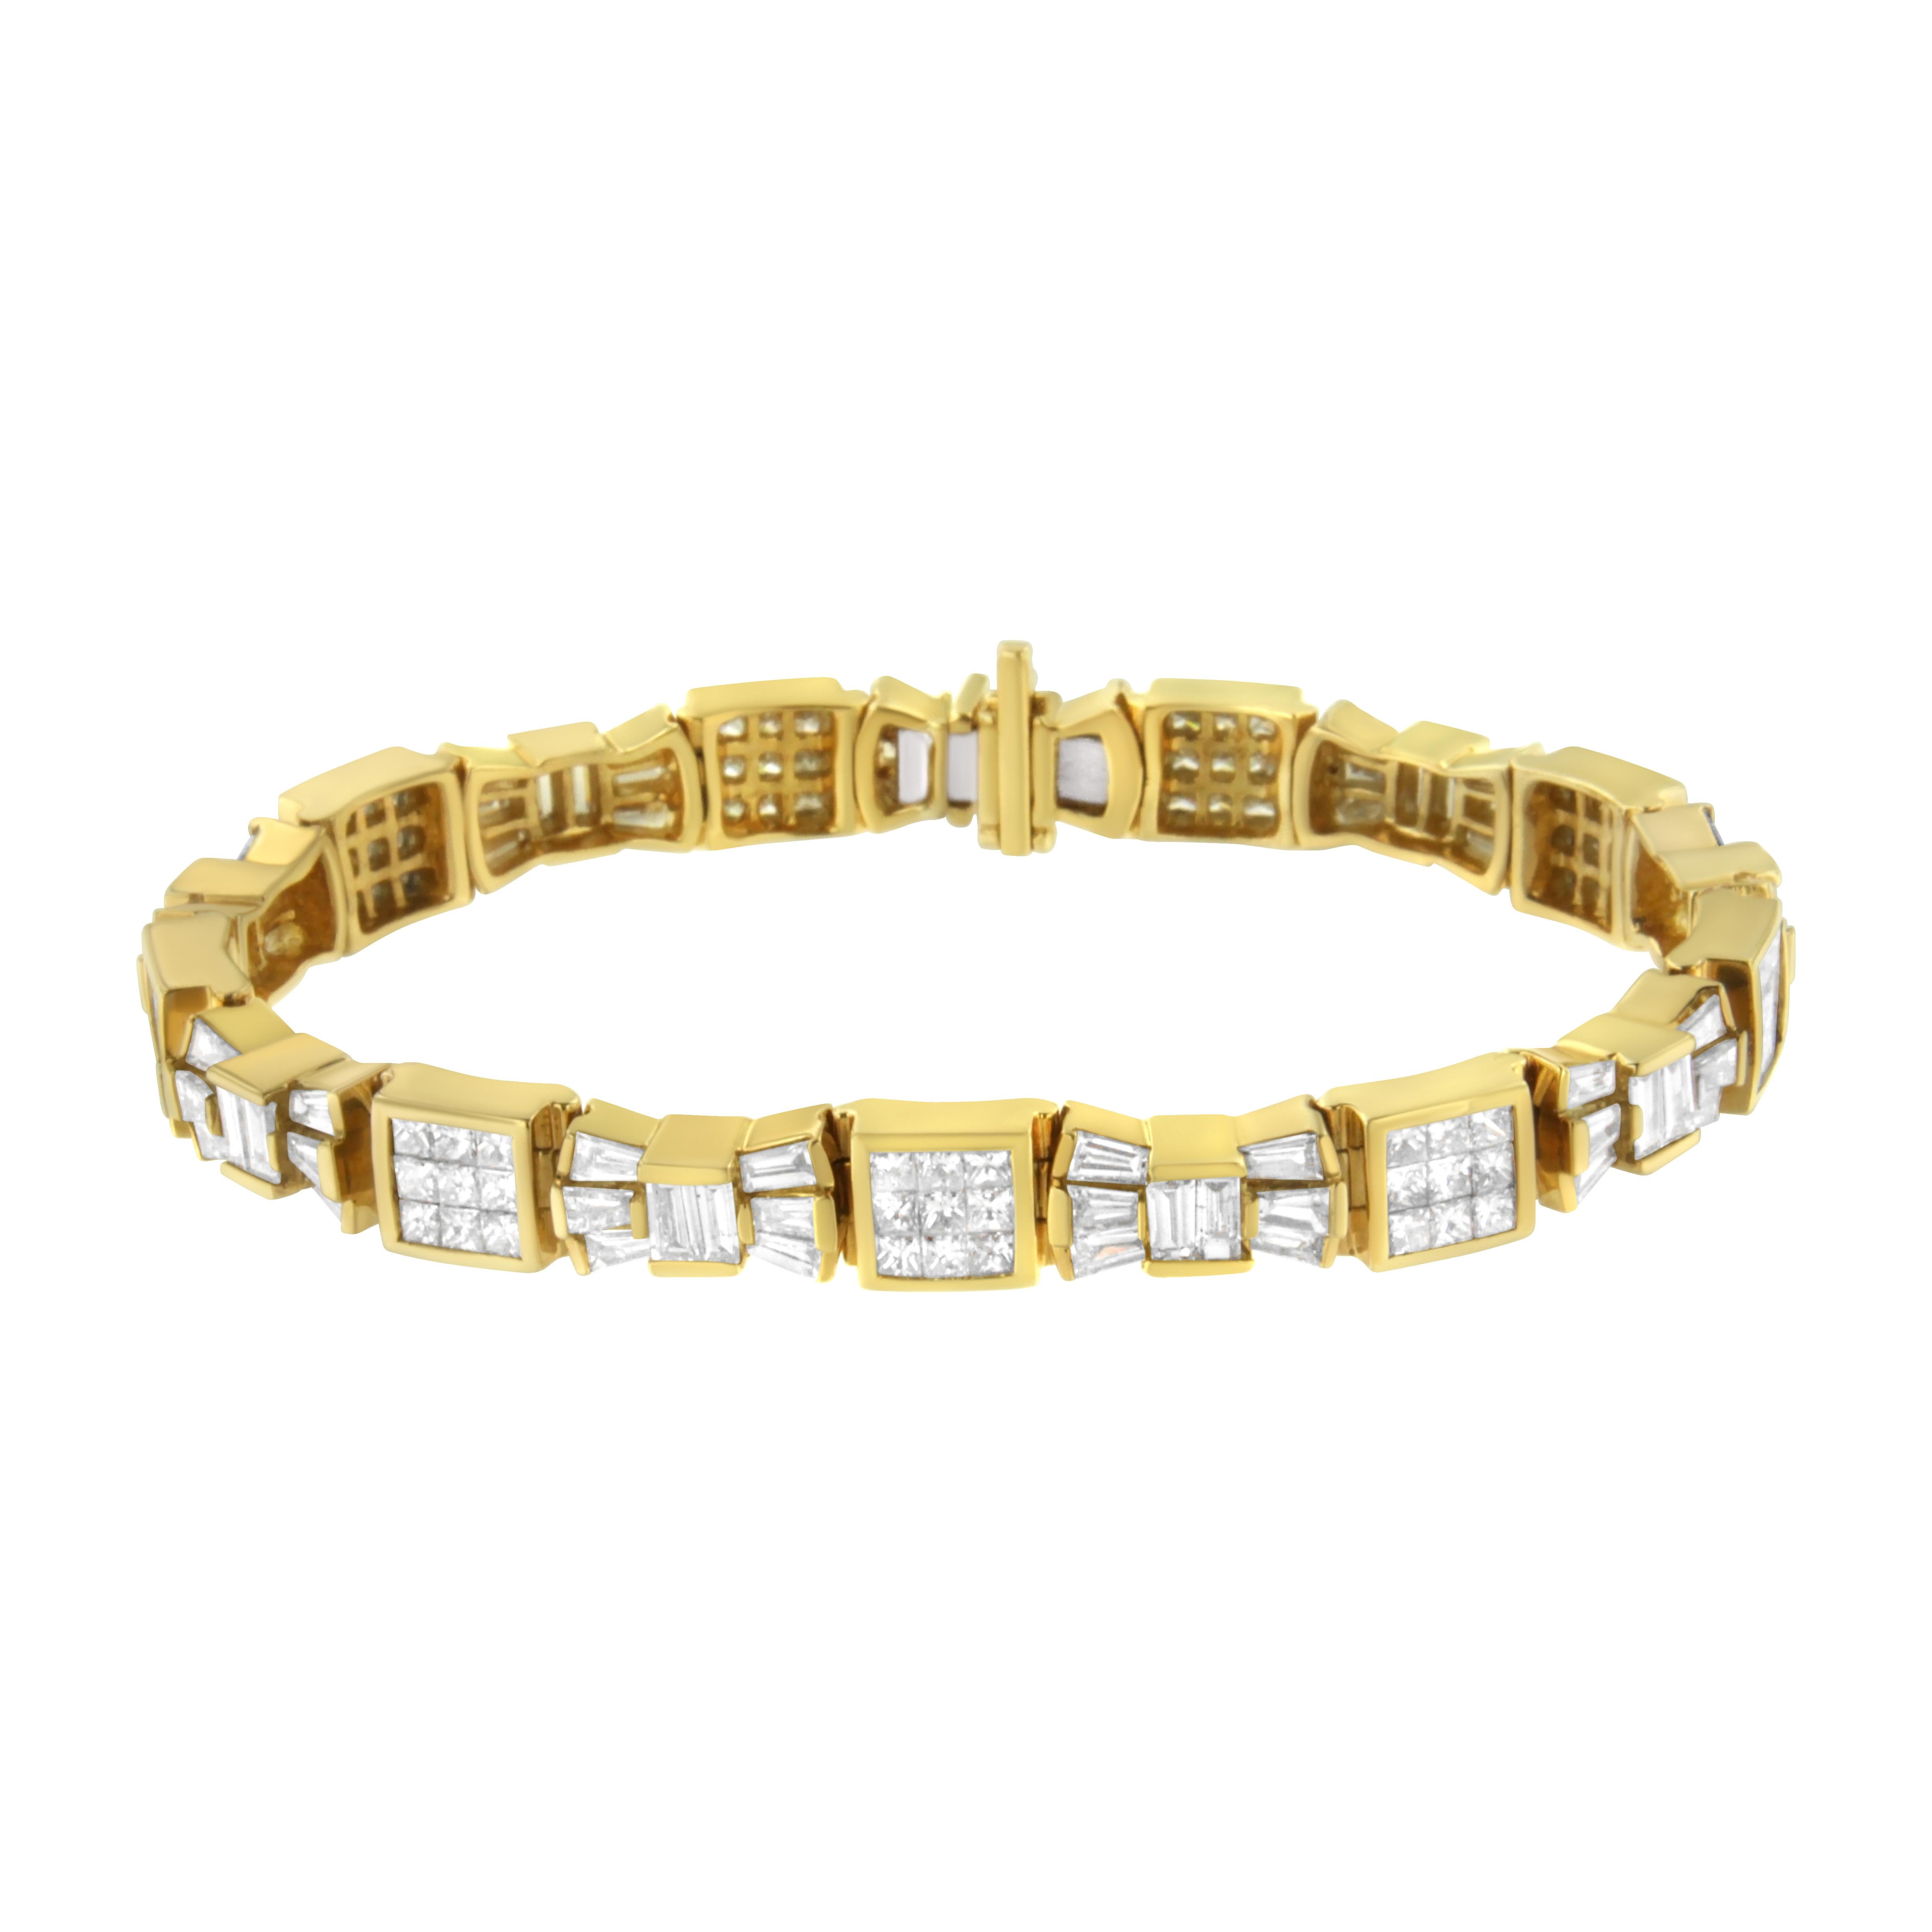 Ce charmant bracelet contemporain en or jaune 14 carats arbore 9 carats de diamants taille princesse et baguette, parsemés sur les maillons de l'arc et du cube pour un look chic qui passe du jour au soir avec style. 

